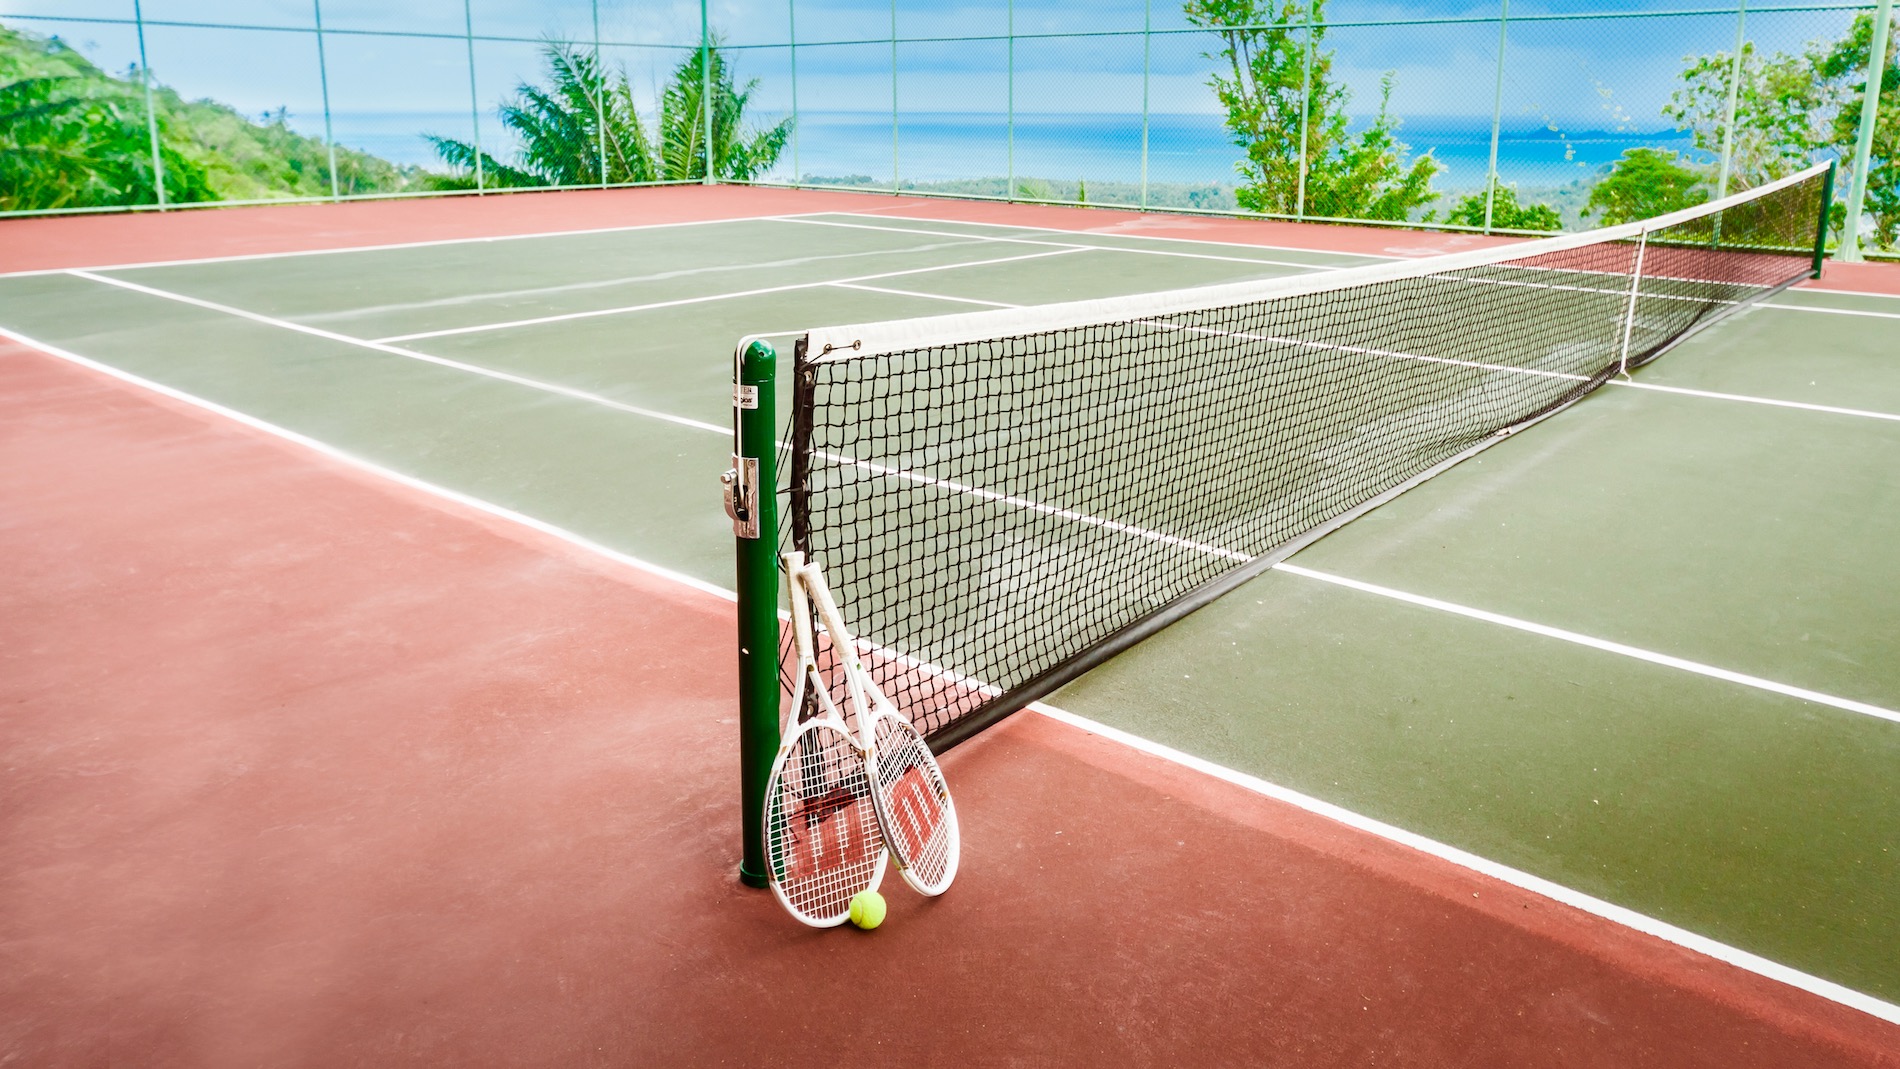 60 Villa Katrani Koh Samui - Tennis Court